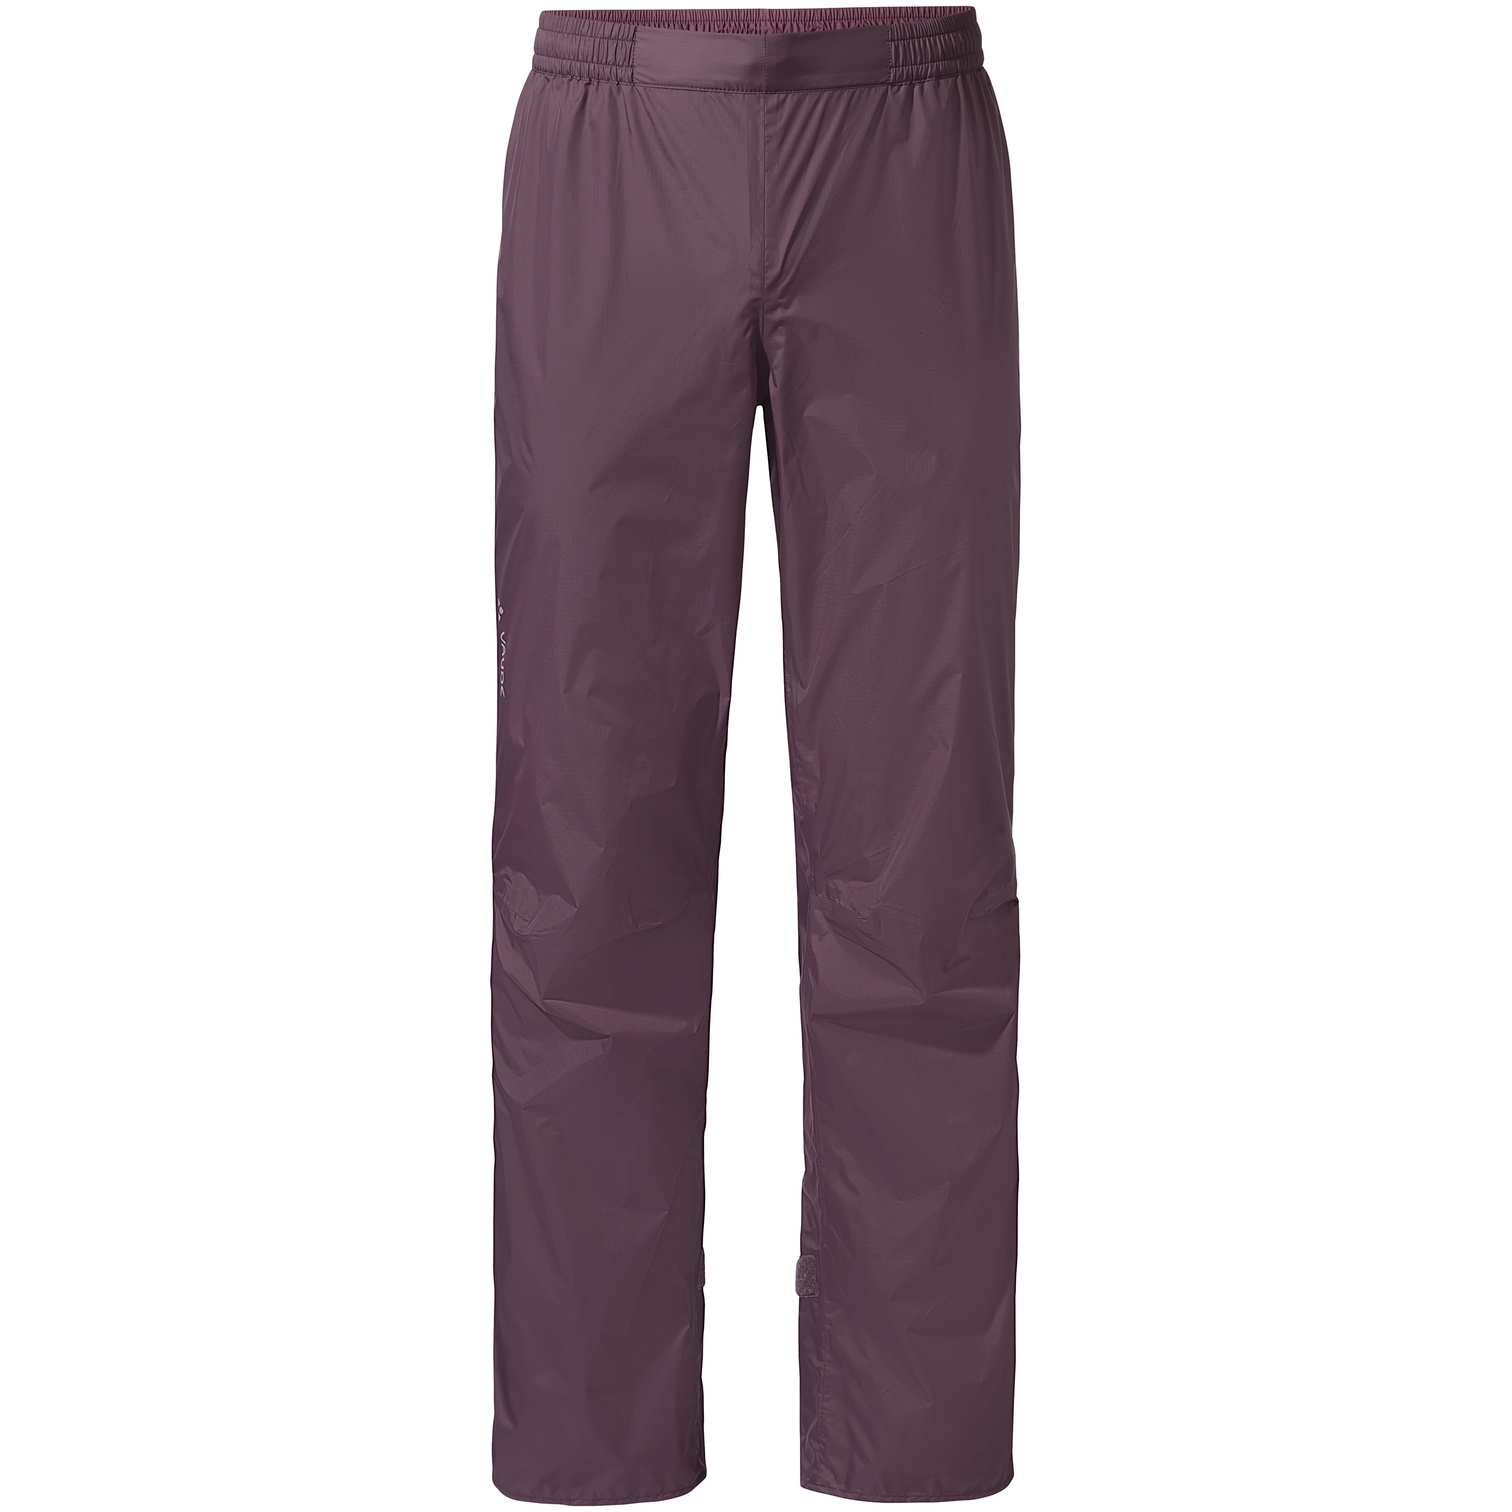 Vaude Drop Pants II - Pantalones impermeables para ciclismo - Hombre